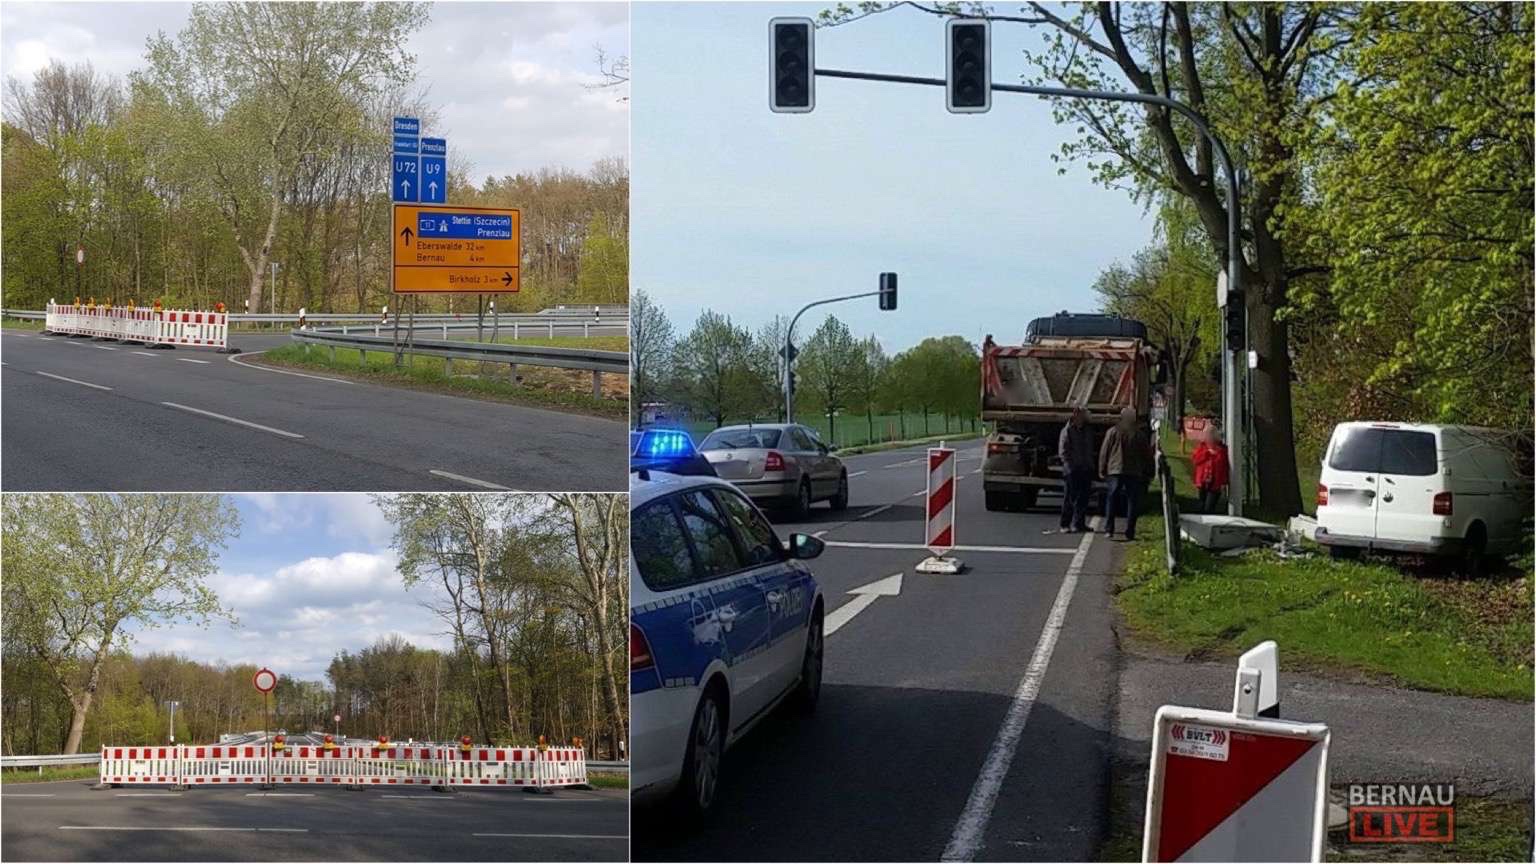 Bernau: L312 Ri. Birkholz gesperrt - Ampelausfall wegen Unfall